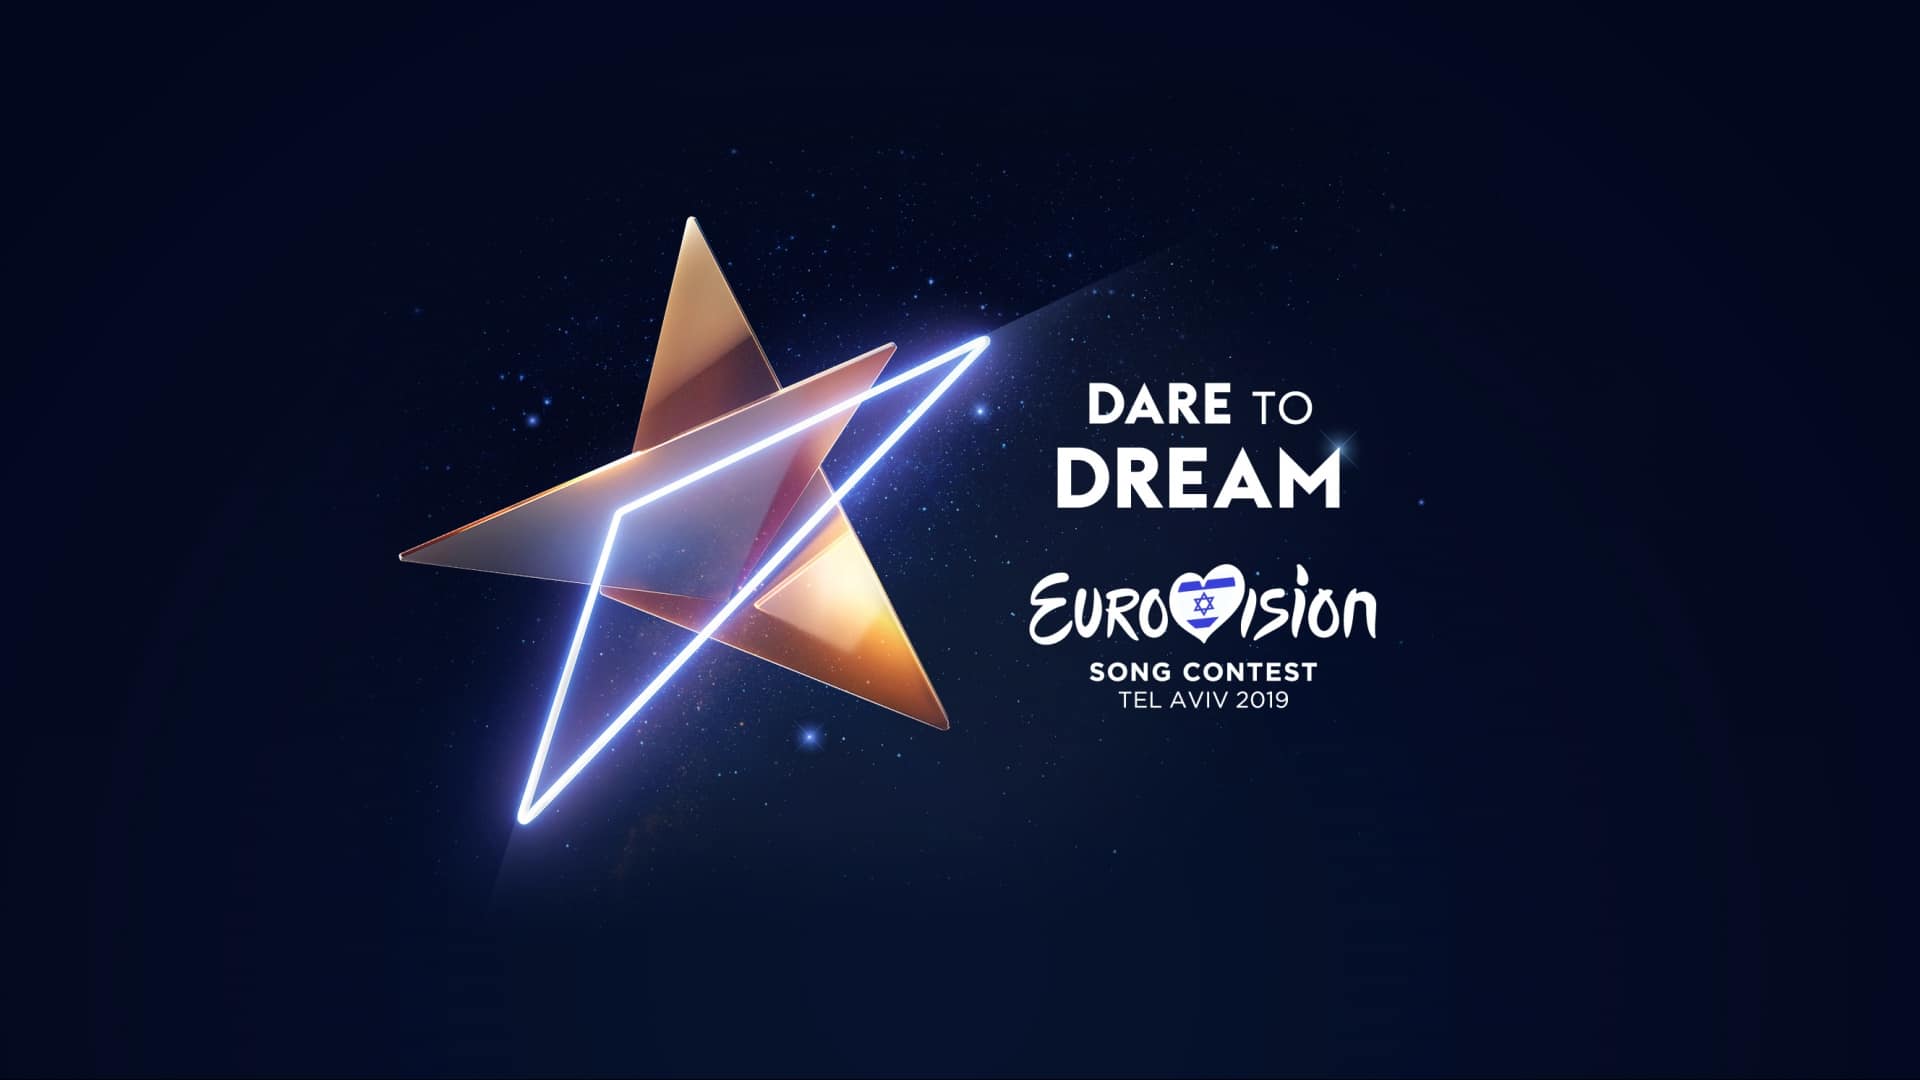 A 2019-es Eurovíziós Dalfesztivál logója - Dare To Dream